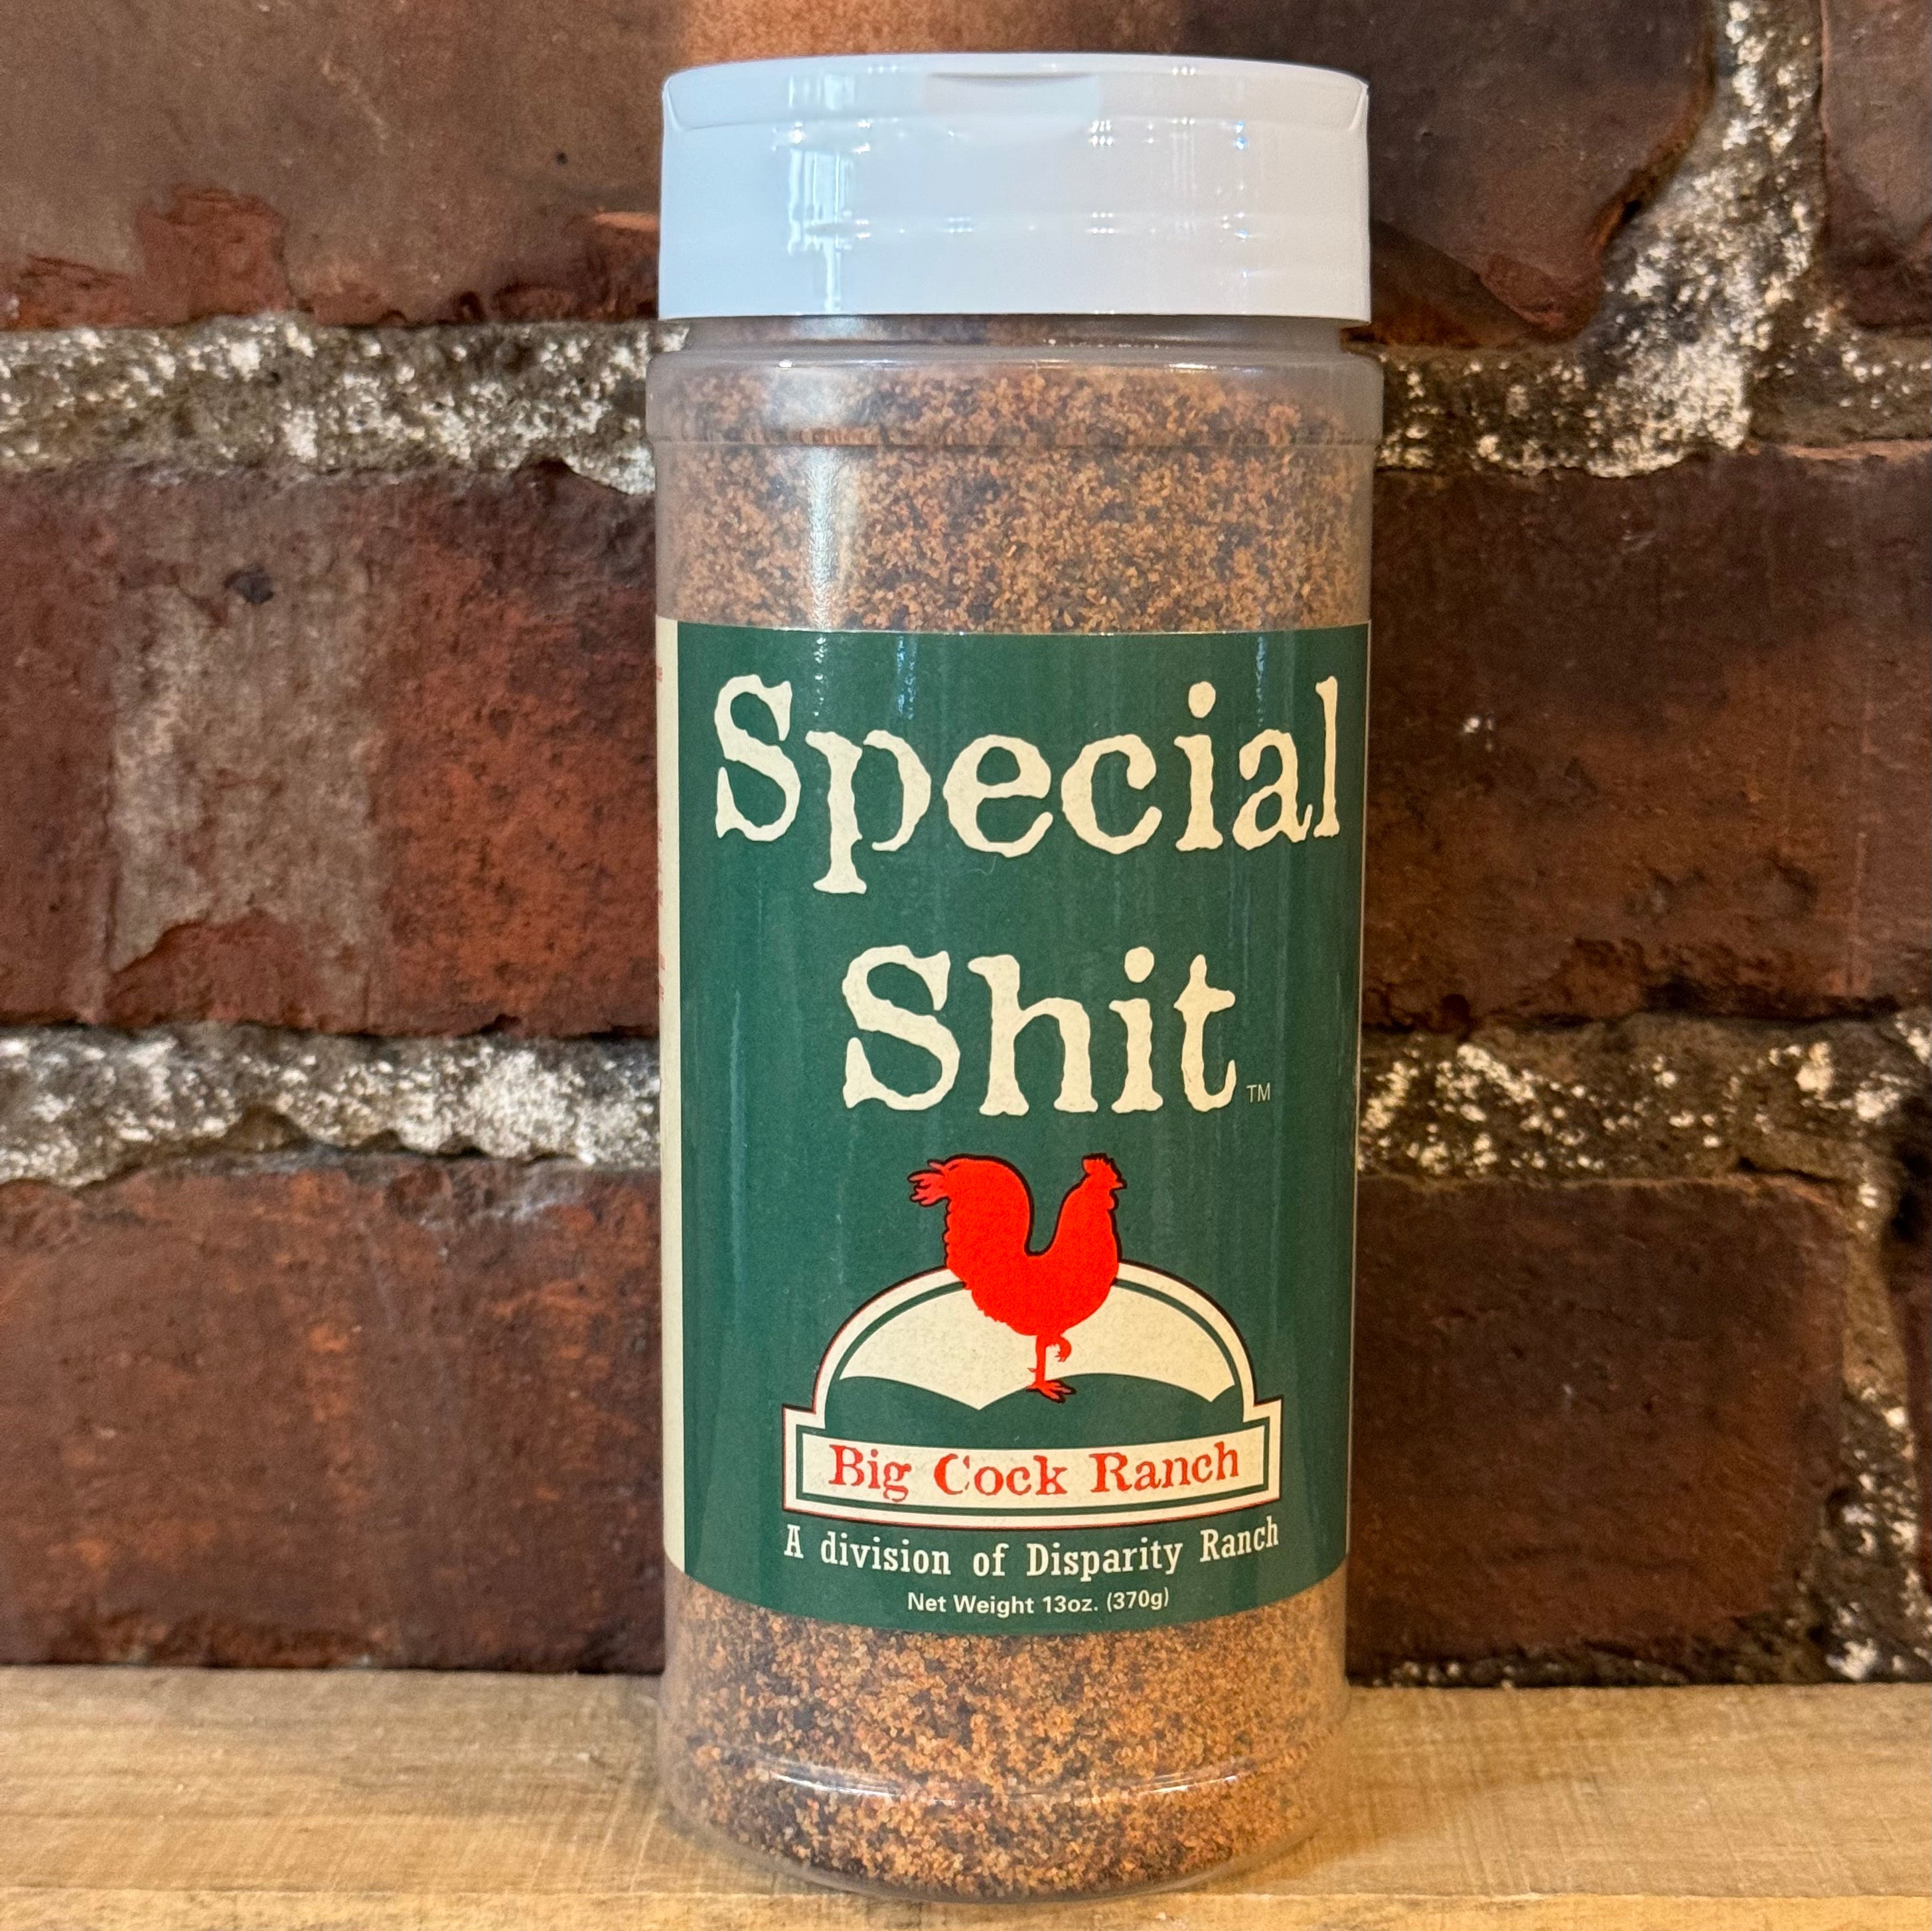 SpecialShit Seasonings